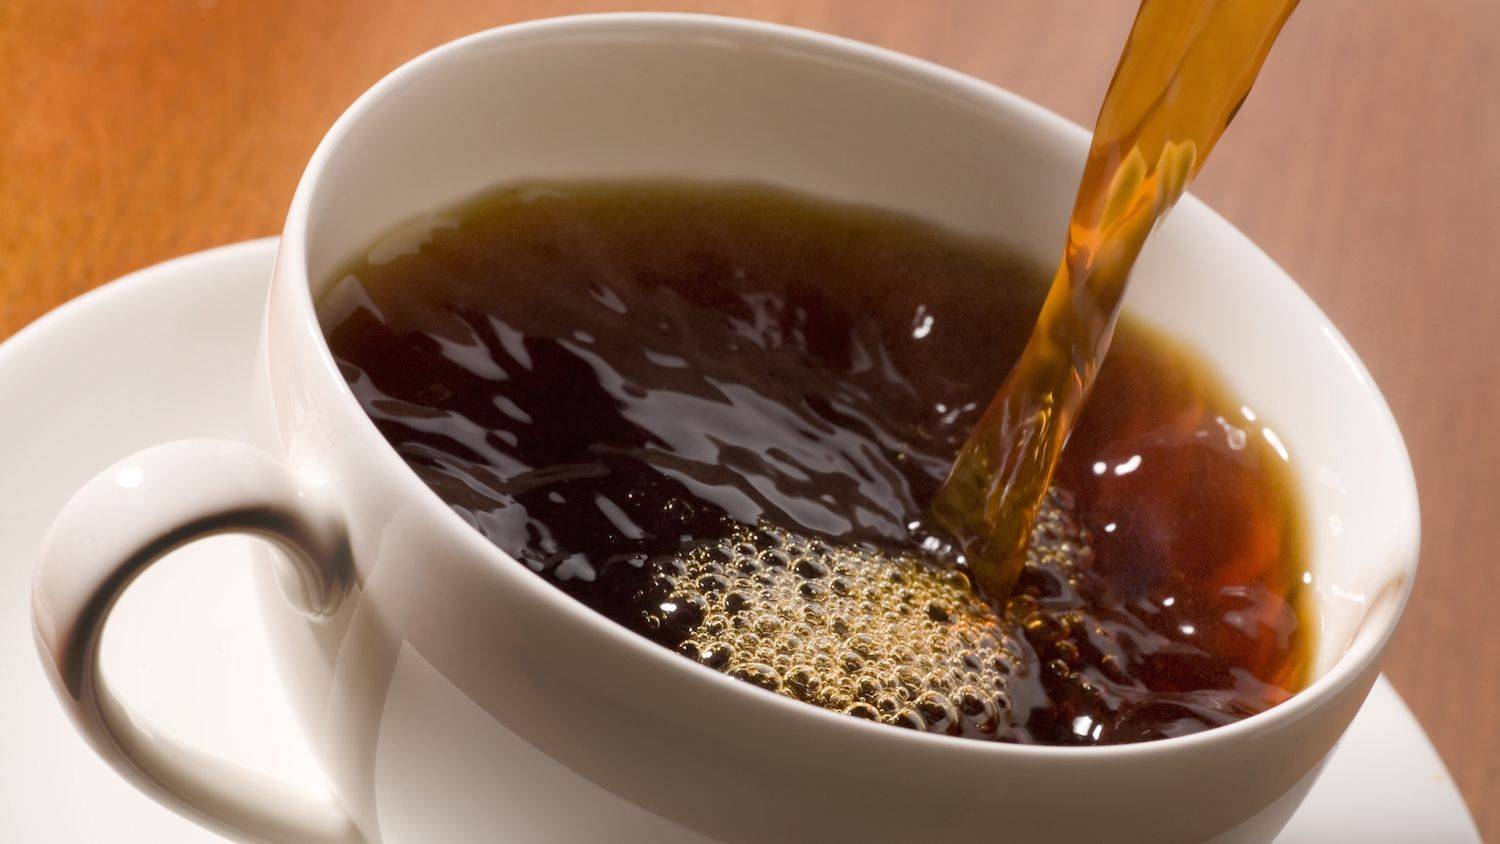 Есть ли кофеин в зеленом чае? сравнение по количеству содержания с кофе и черным чаем, где больше, сколько содержит и как уменьшить